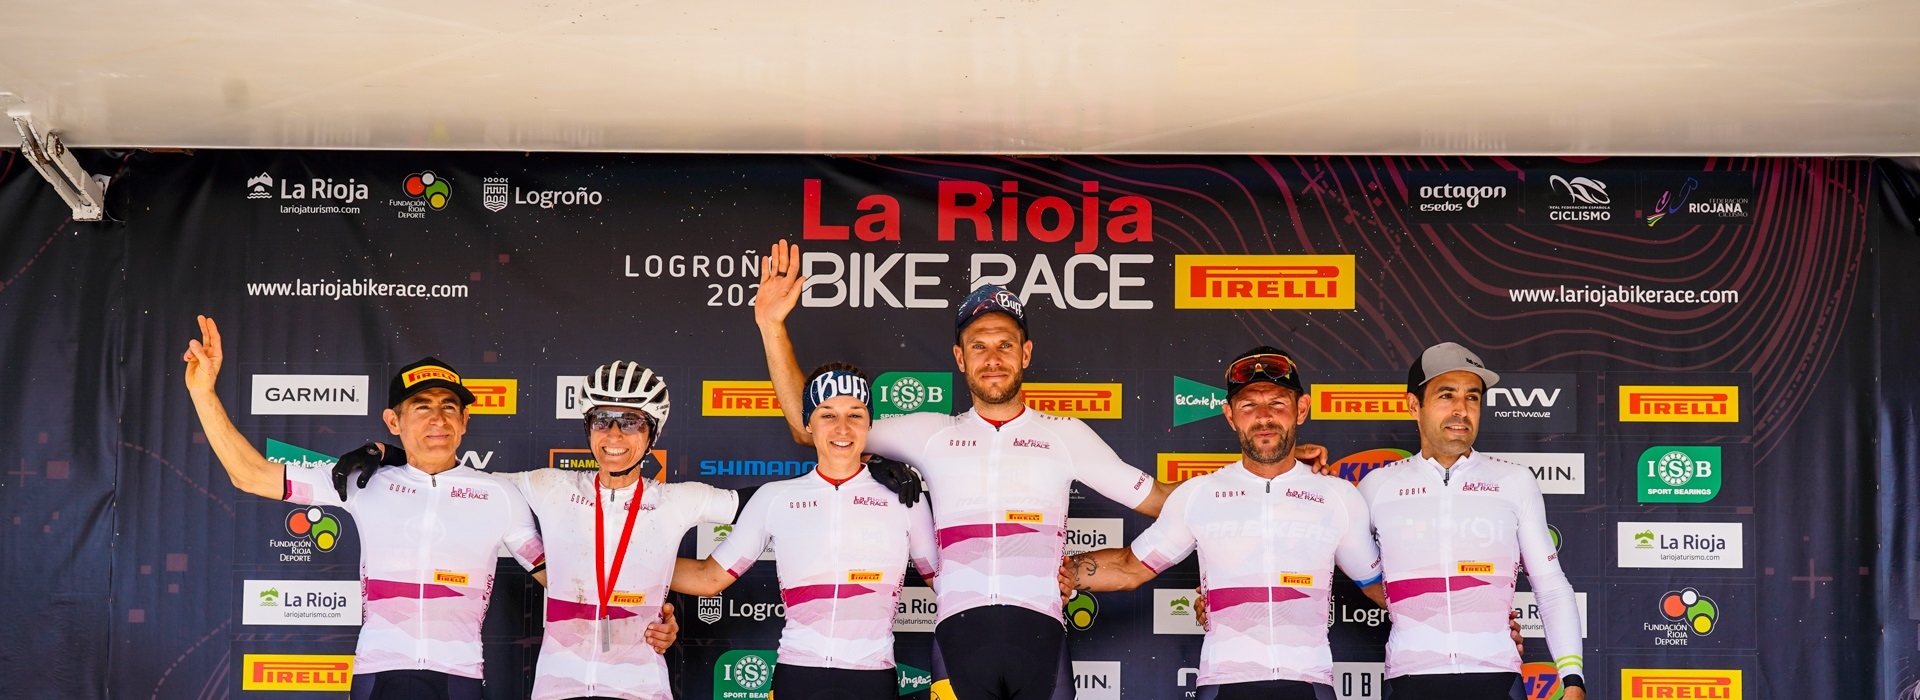 Ellos son los ganadores de esta edición de La Rioja Bike Race presented by Pirelli